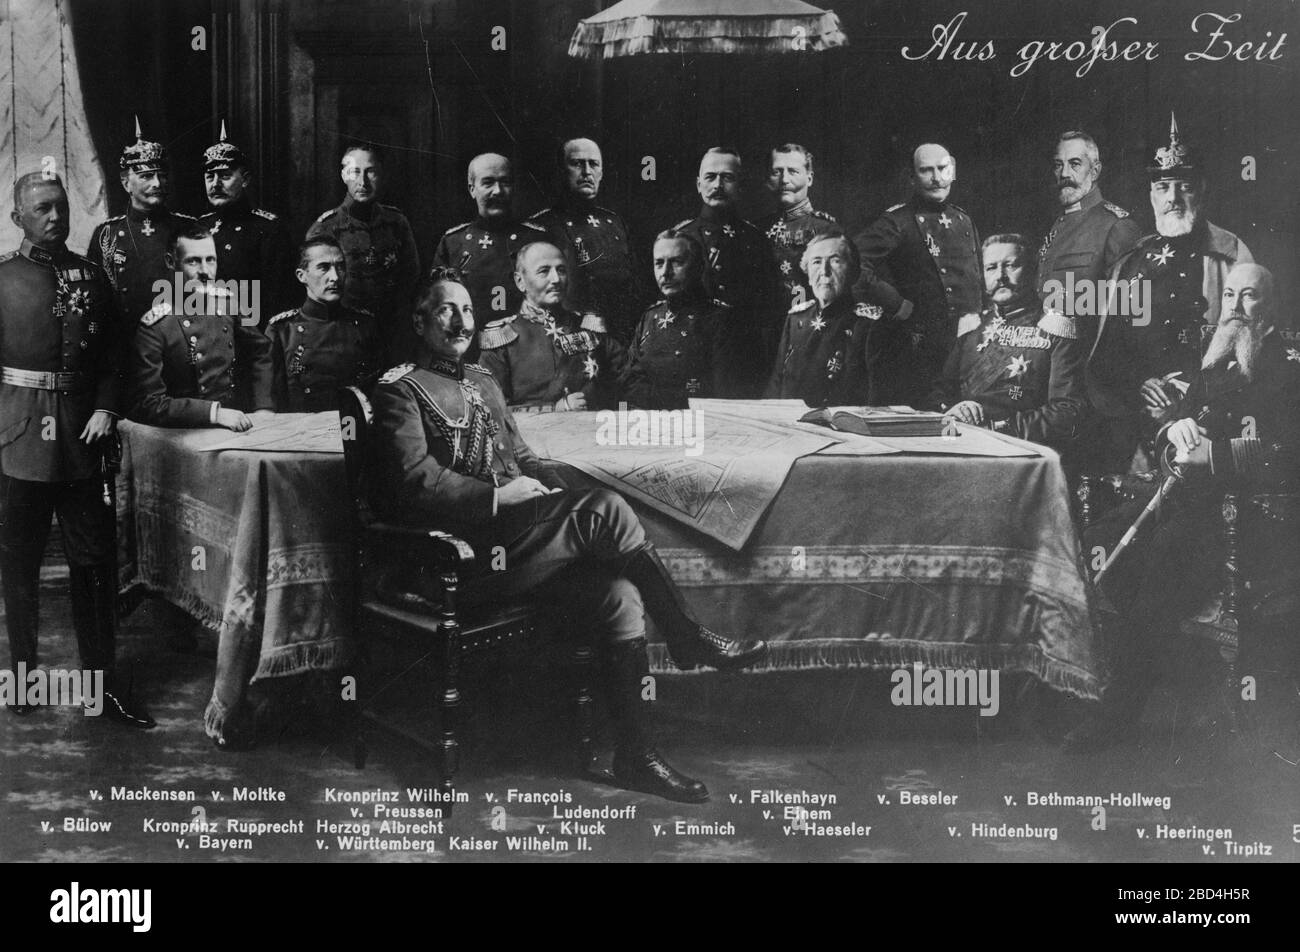 Links rechts stehend: Von Bulow, von Mackensen, von Molike, von Prinz Wilhelm von Preßburg, von Francois, Ludendorff, von Falkenheyn, von Eimen, von Beseler, von Bethman-Hollweg, von Heeringen. Von links nach rechts sitzend: Krone Prinz Rupprecht Stockfoto